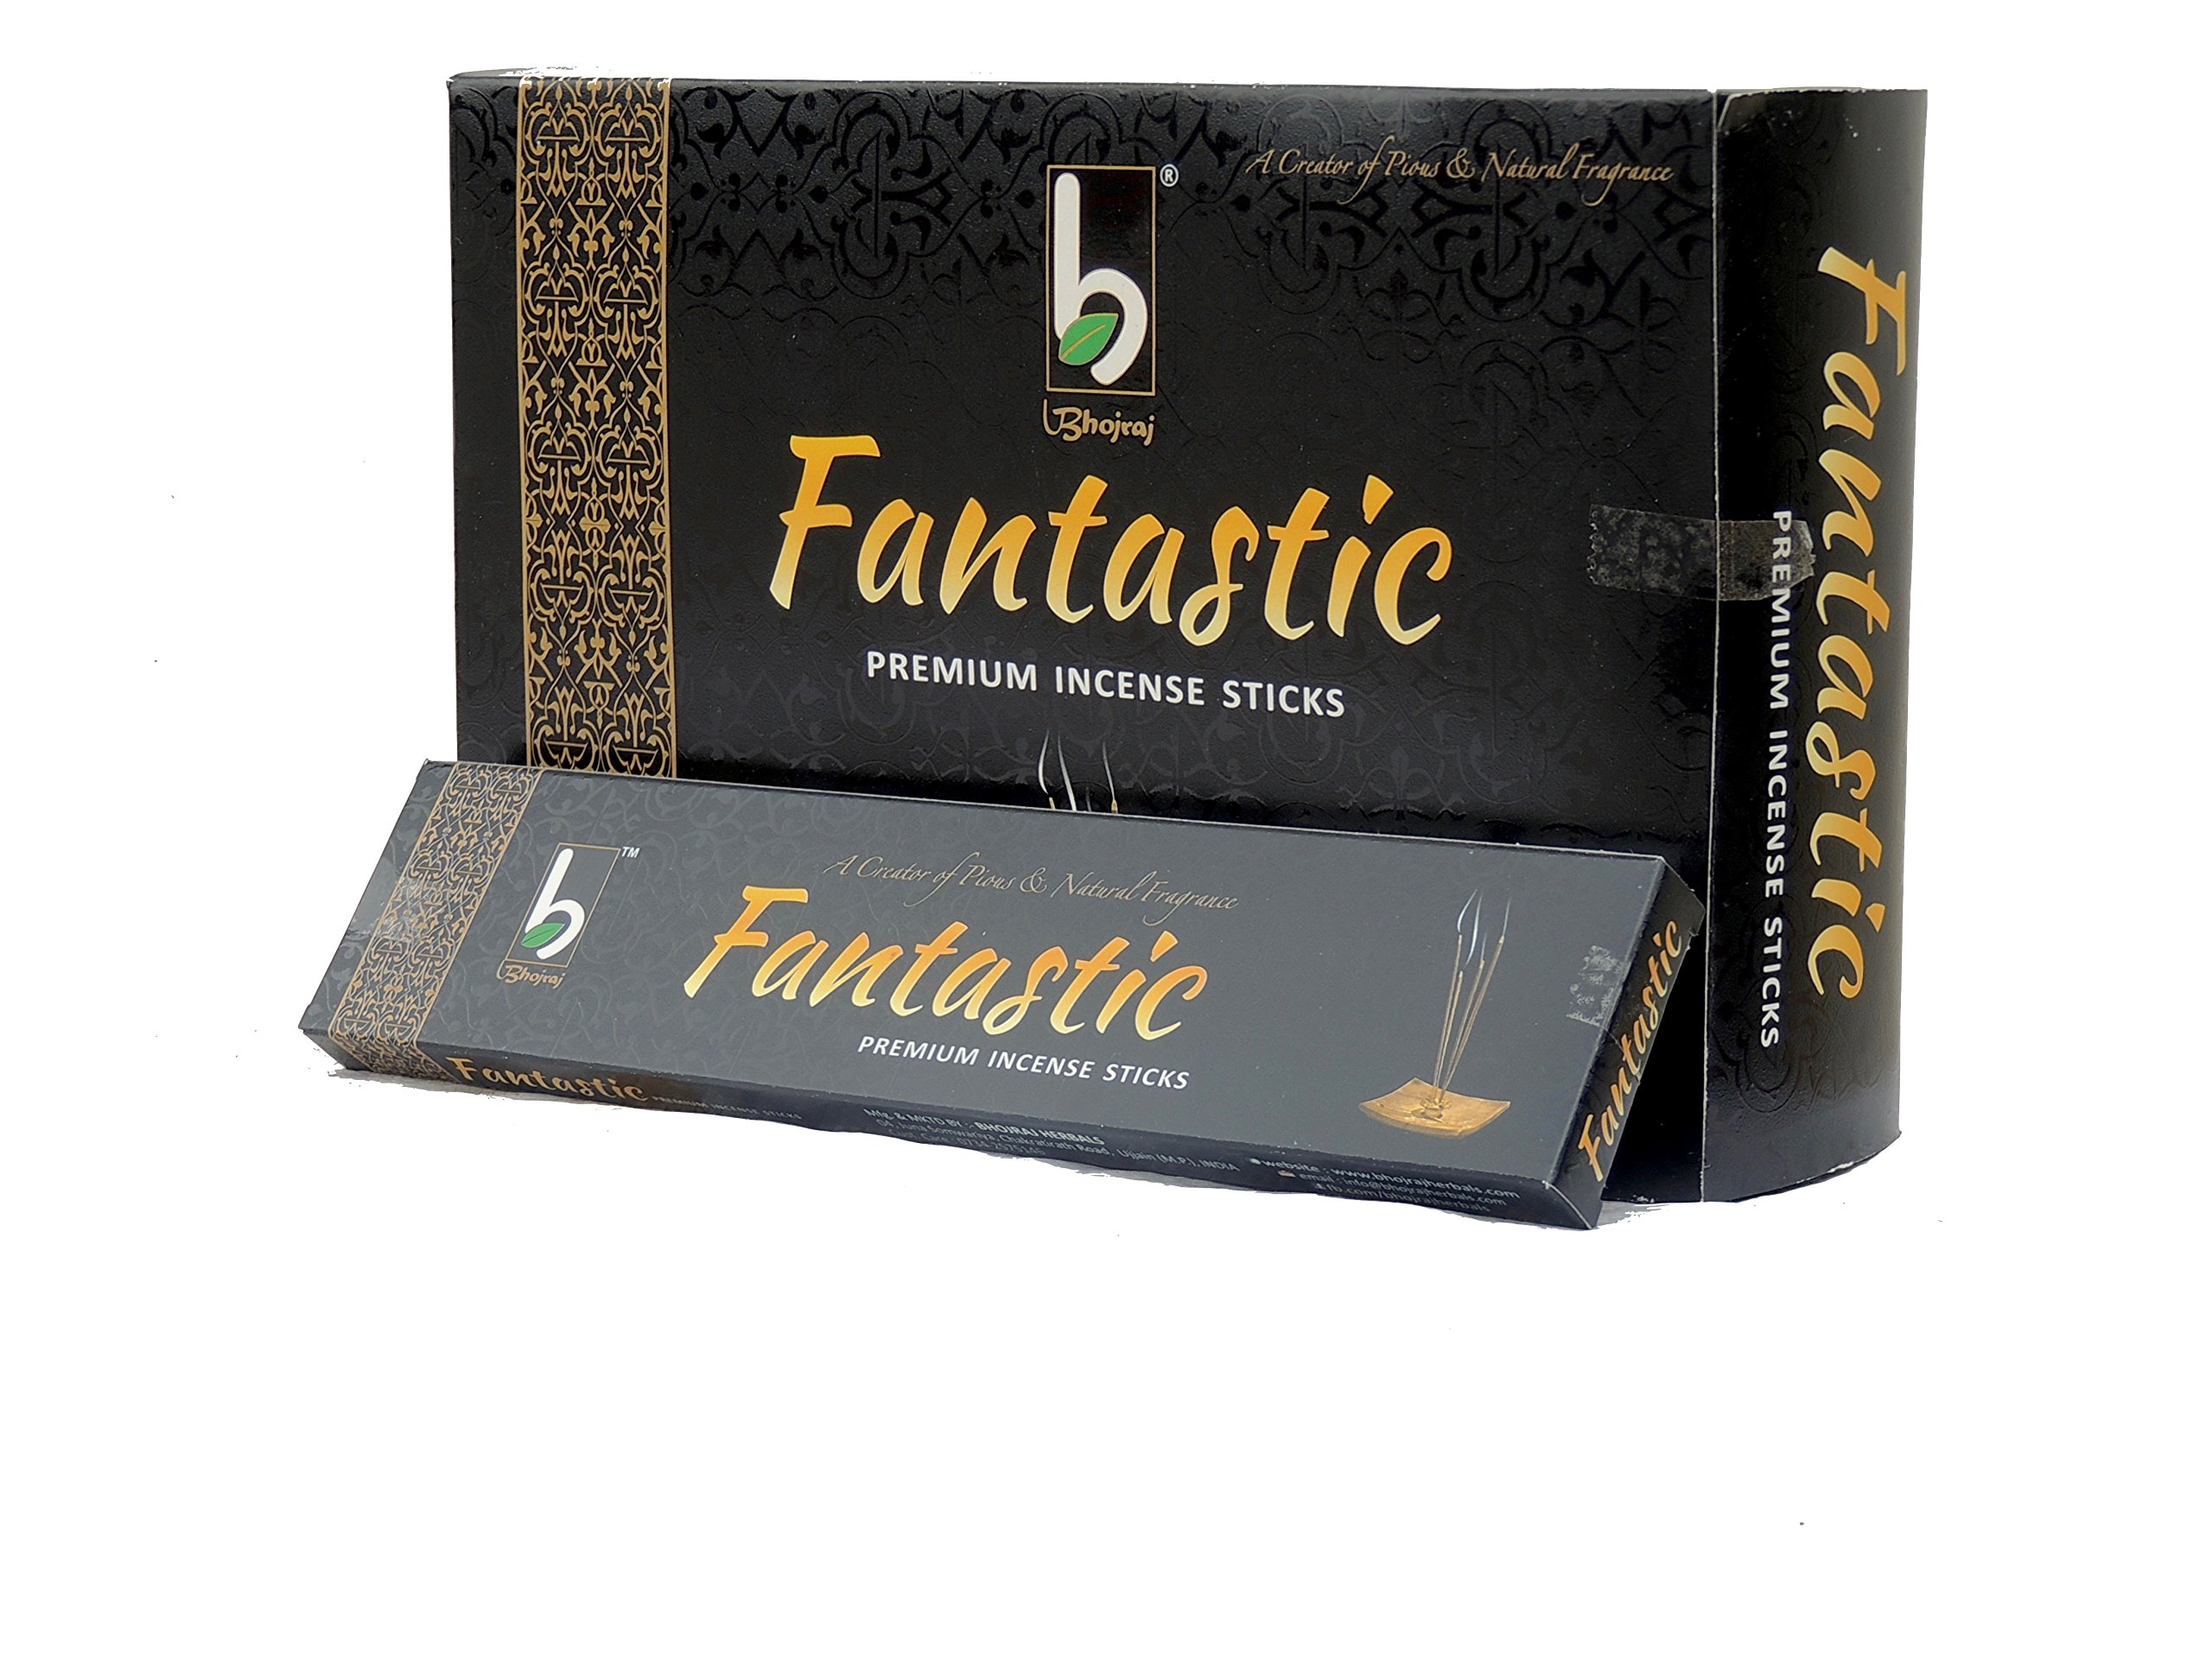 FANTASTIC Premium Incense Sticks, Bhojraj (ФАНТАСТИК премиальные благовония, Бходжрадж), 100 г.